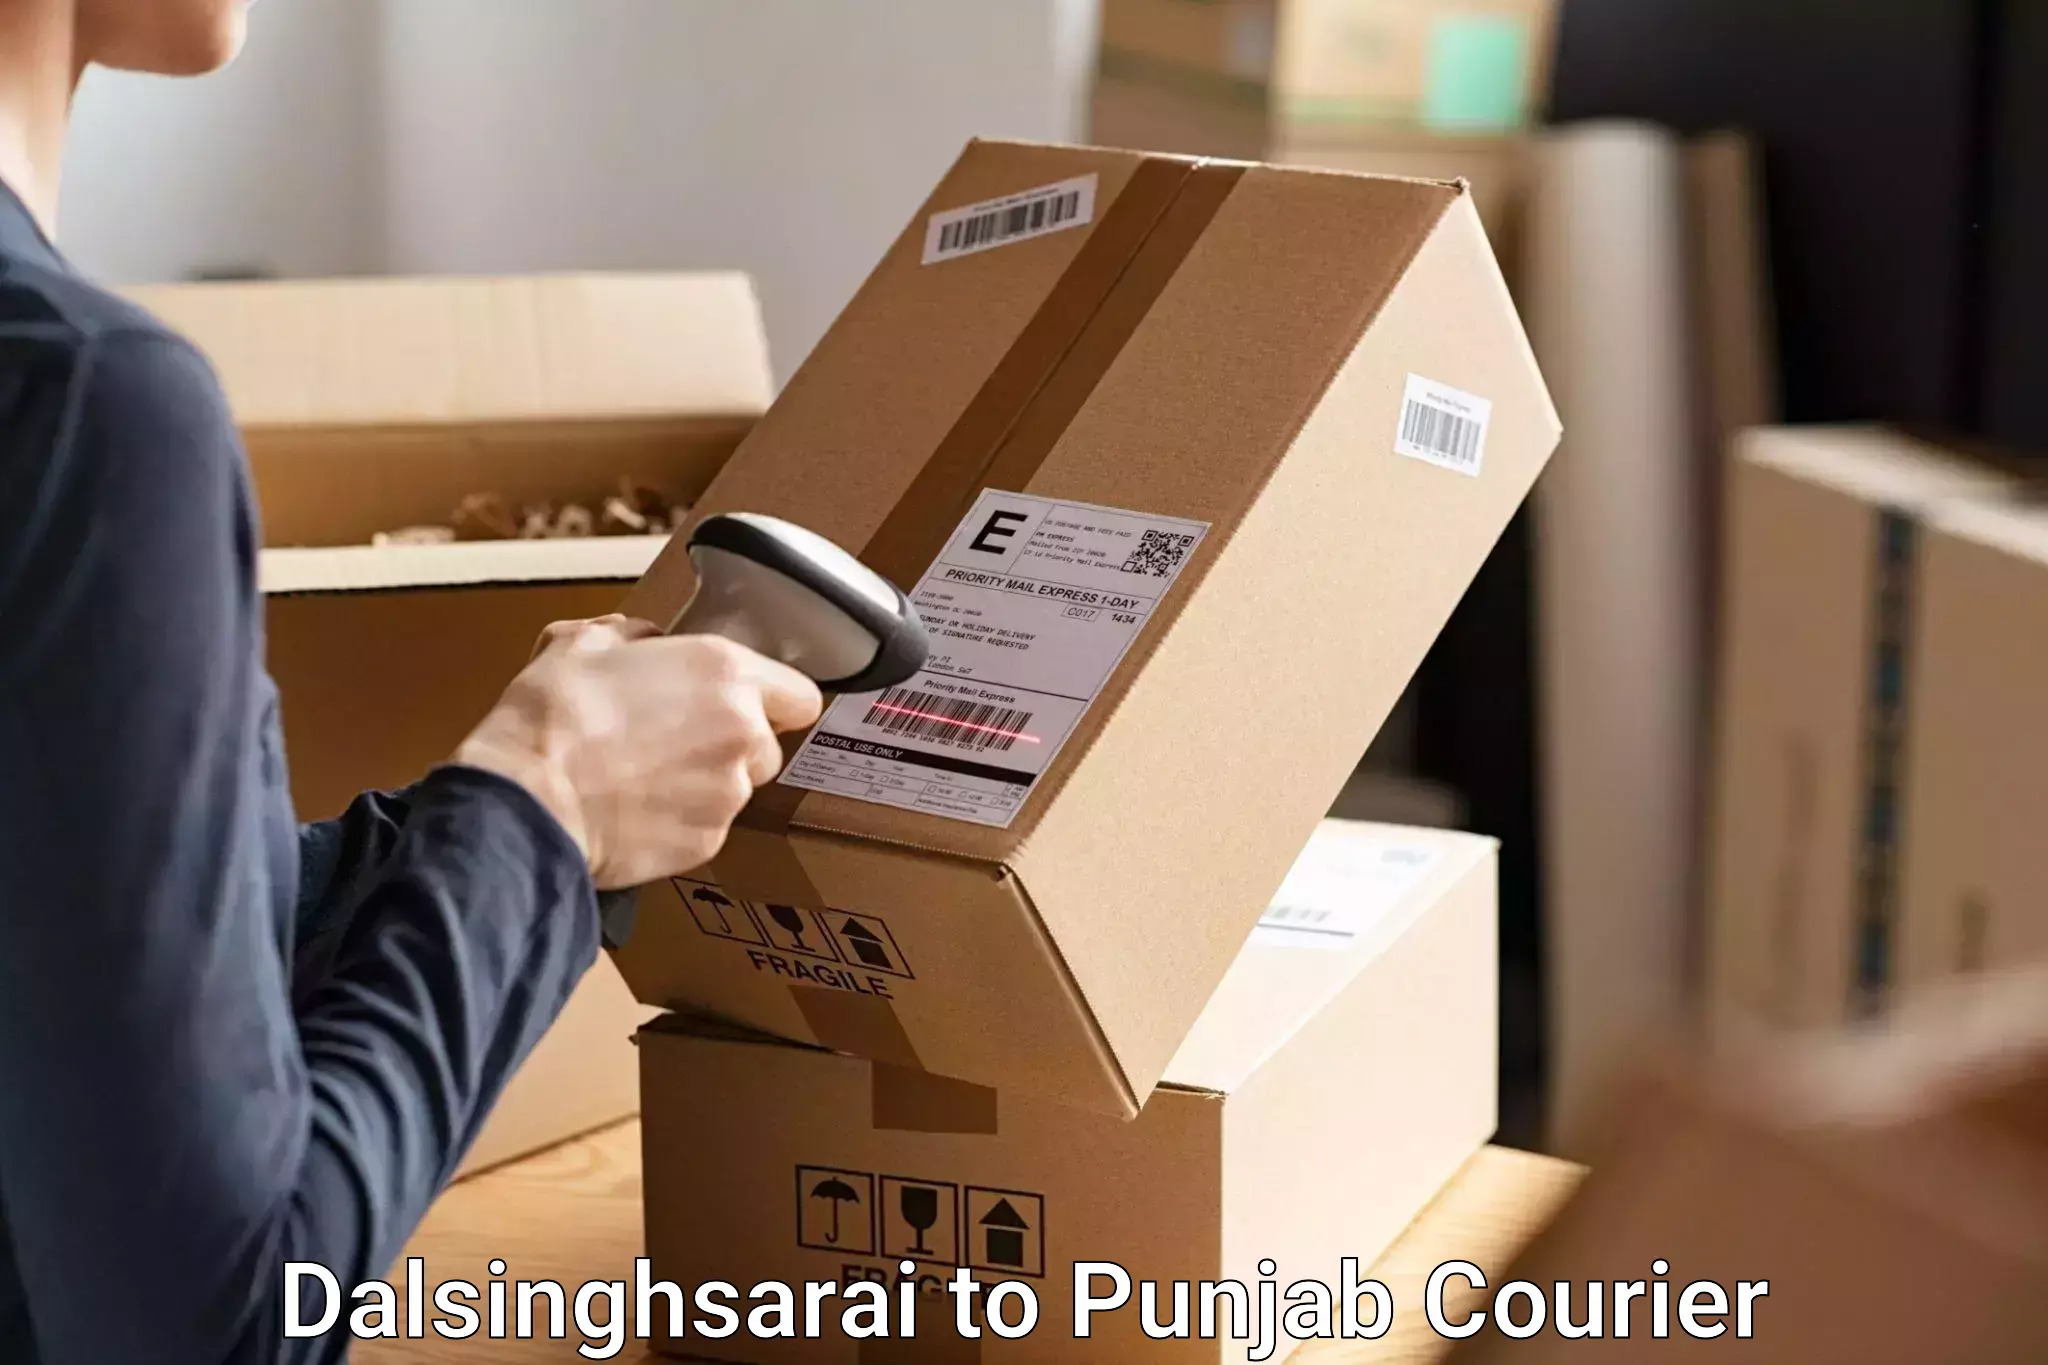 Customized luggage delivery Dalsinghsarai to Central University of Punjab Bathinda